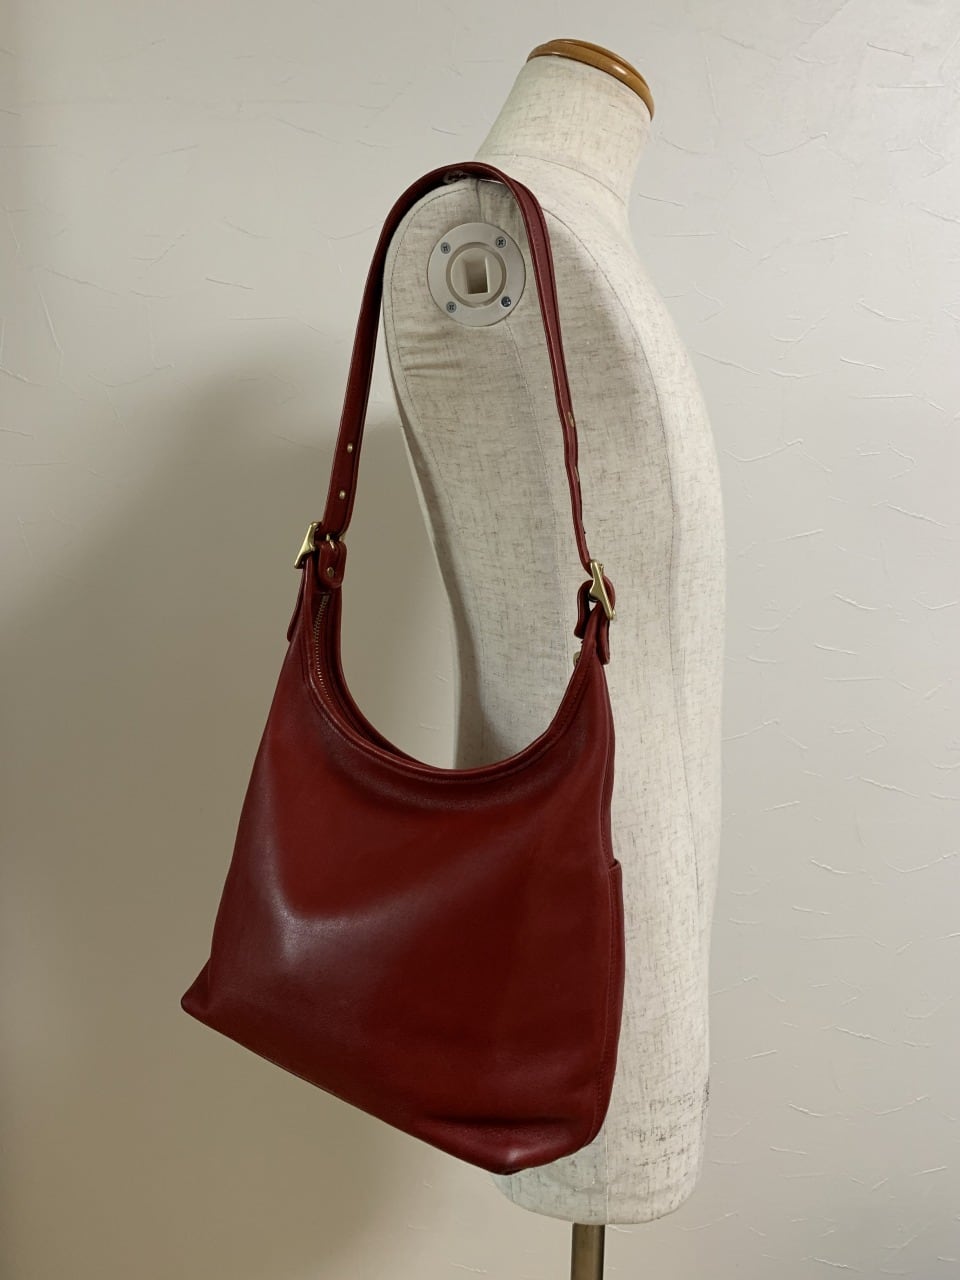 Leather Shoulder Bag "COACH"